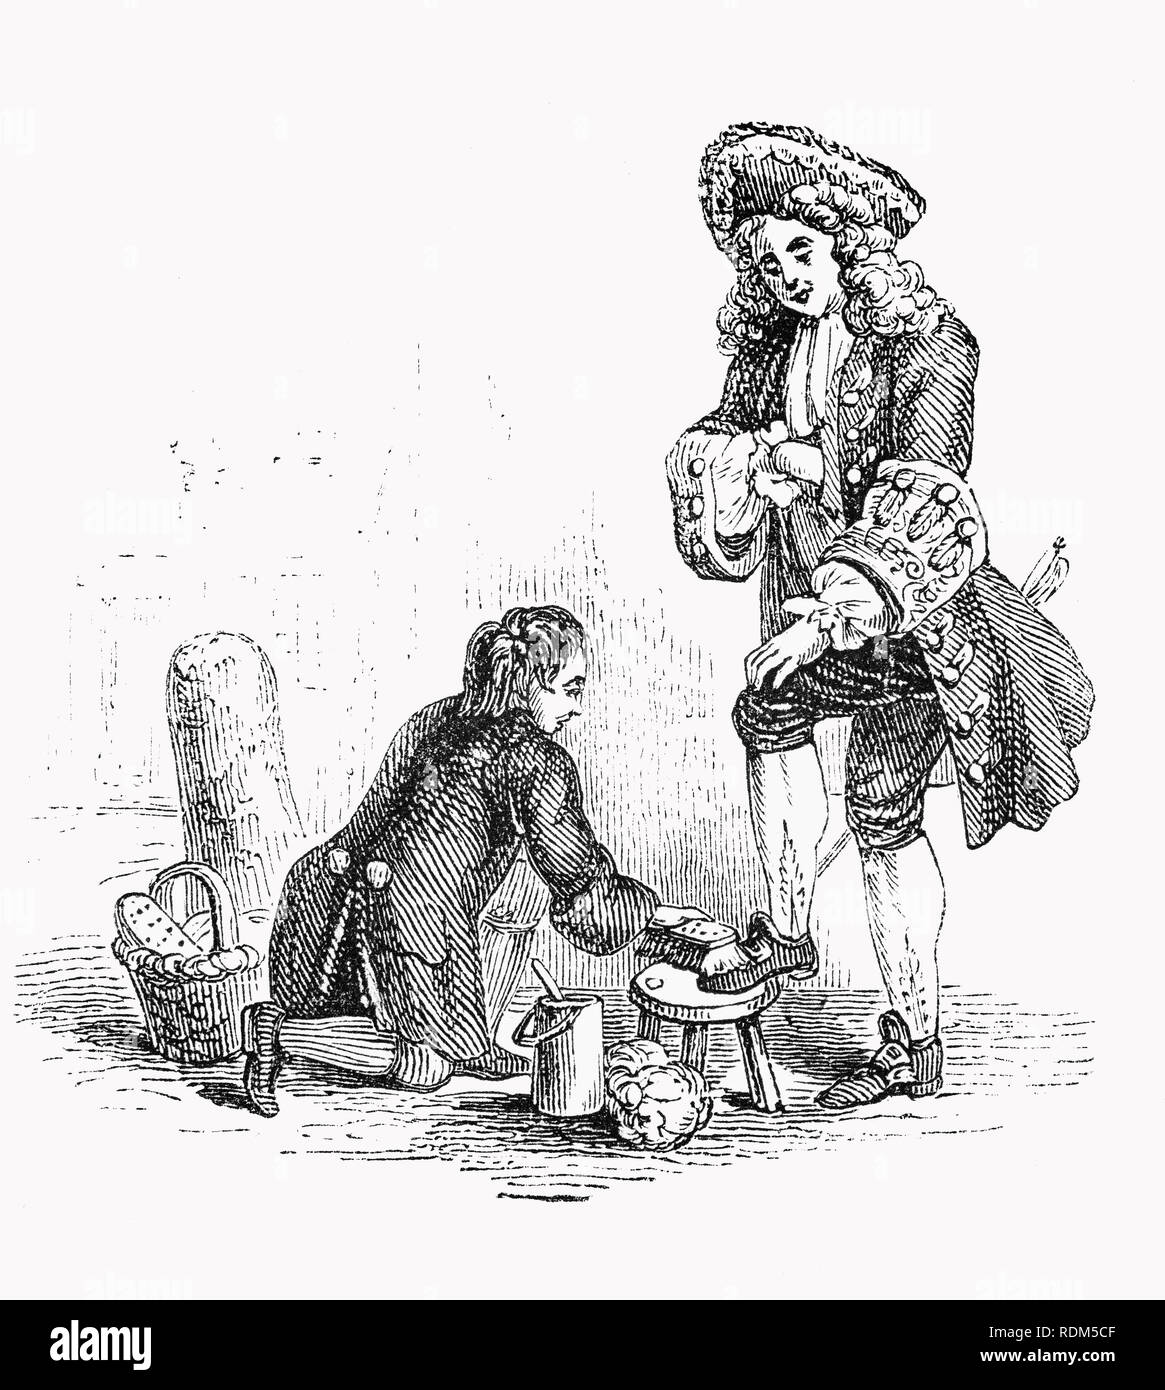 Shoeshiner oder Boot Poliermaschine im 18. Jahrhundert London, England; eine Besetzung, in der eine Person, die Schuhe poliert mit Schuhcreme. Oft werden sie als Schuhputzmaschine/-service Jungen bekannt, da der Job traditionell ist, dass ein männliches Kind. Andere Synonyme sind Kolumne und shoeblack. Während die Rolle in der westlichen Zivilisation verunglimpft wird, glänzende Schuhe ist eine wichtige Einkommensquelle für viele Kinder und Familien überall auf der Welt. Stockfoto